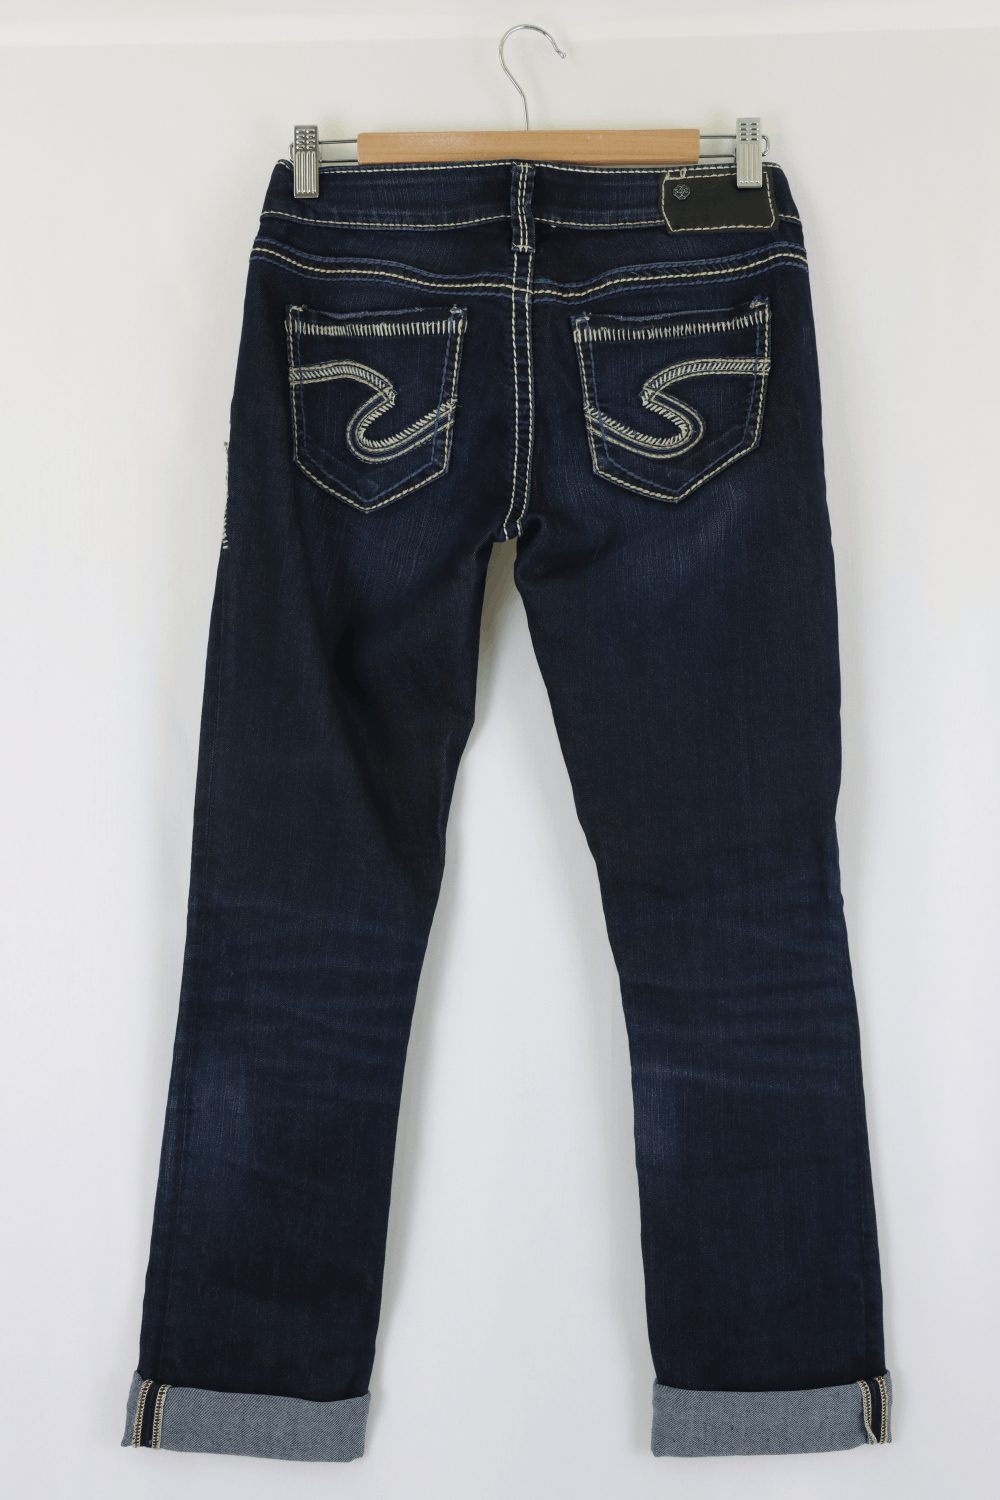 Berkley Low Rise Jeans 26